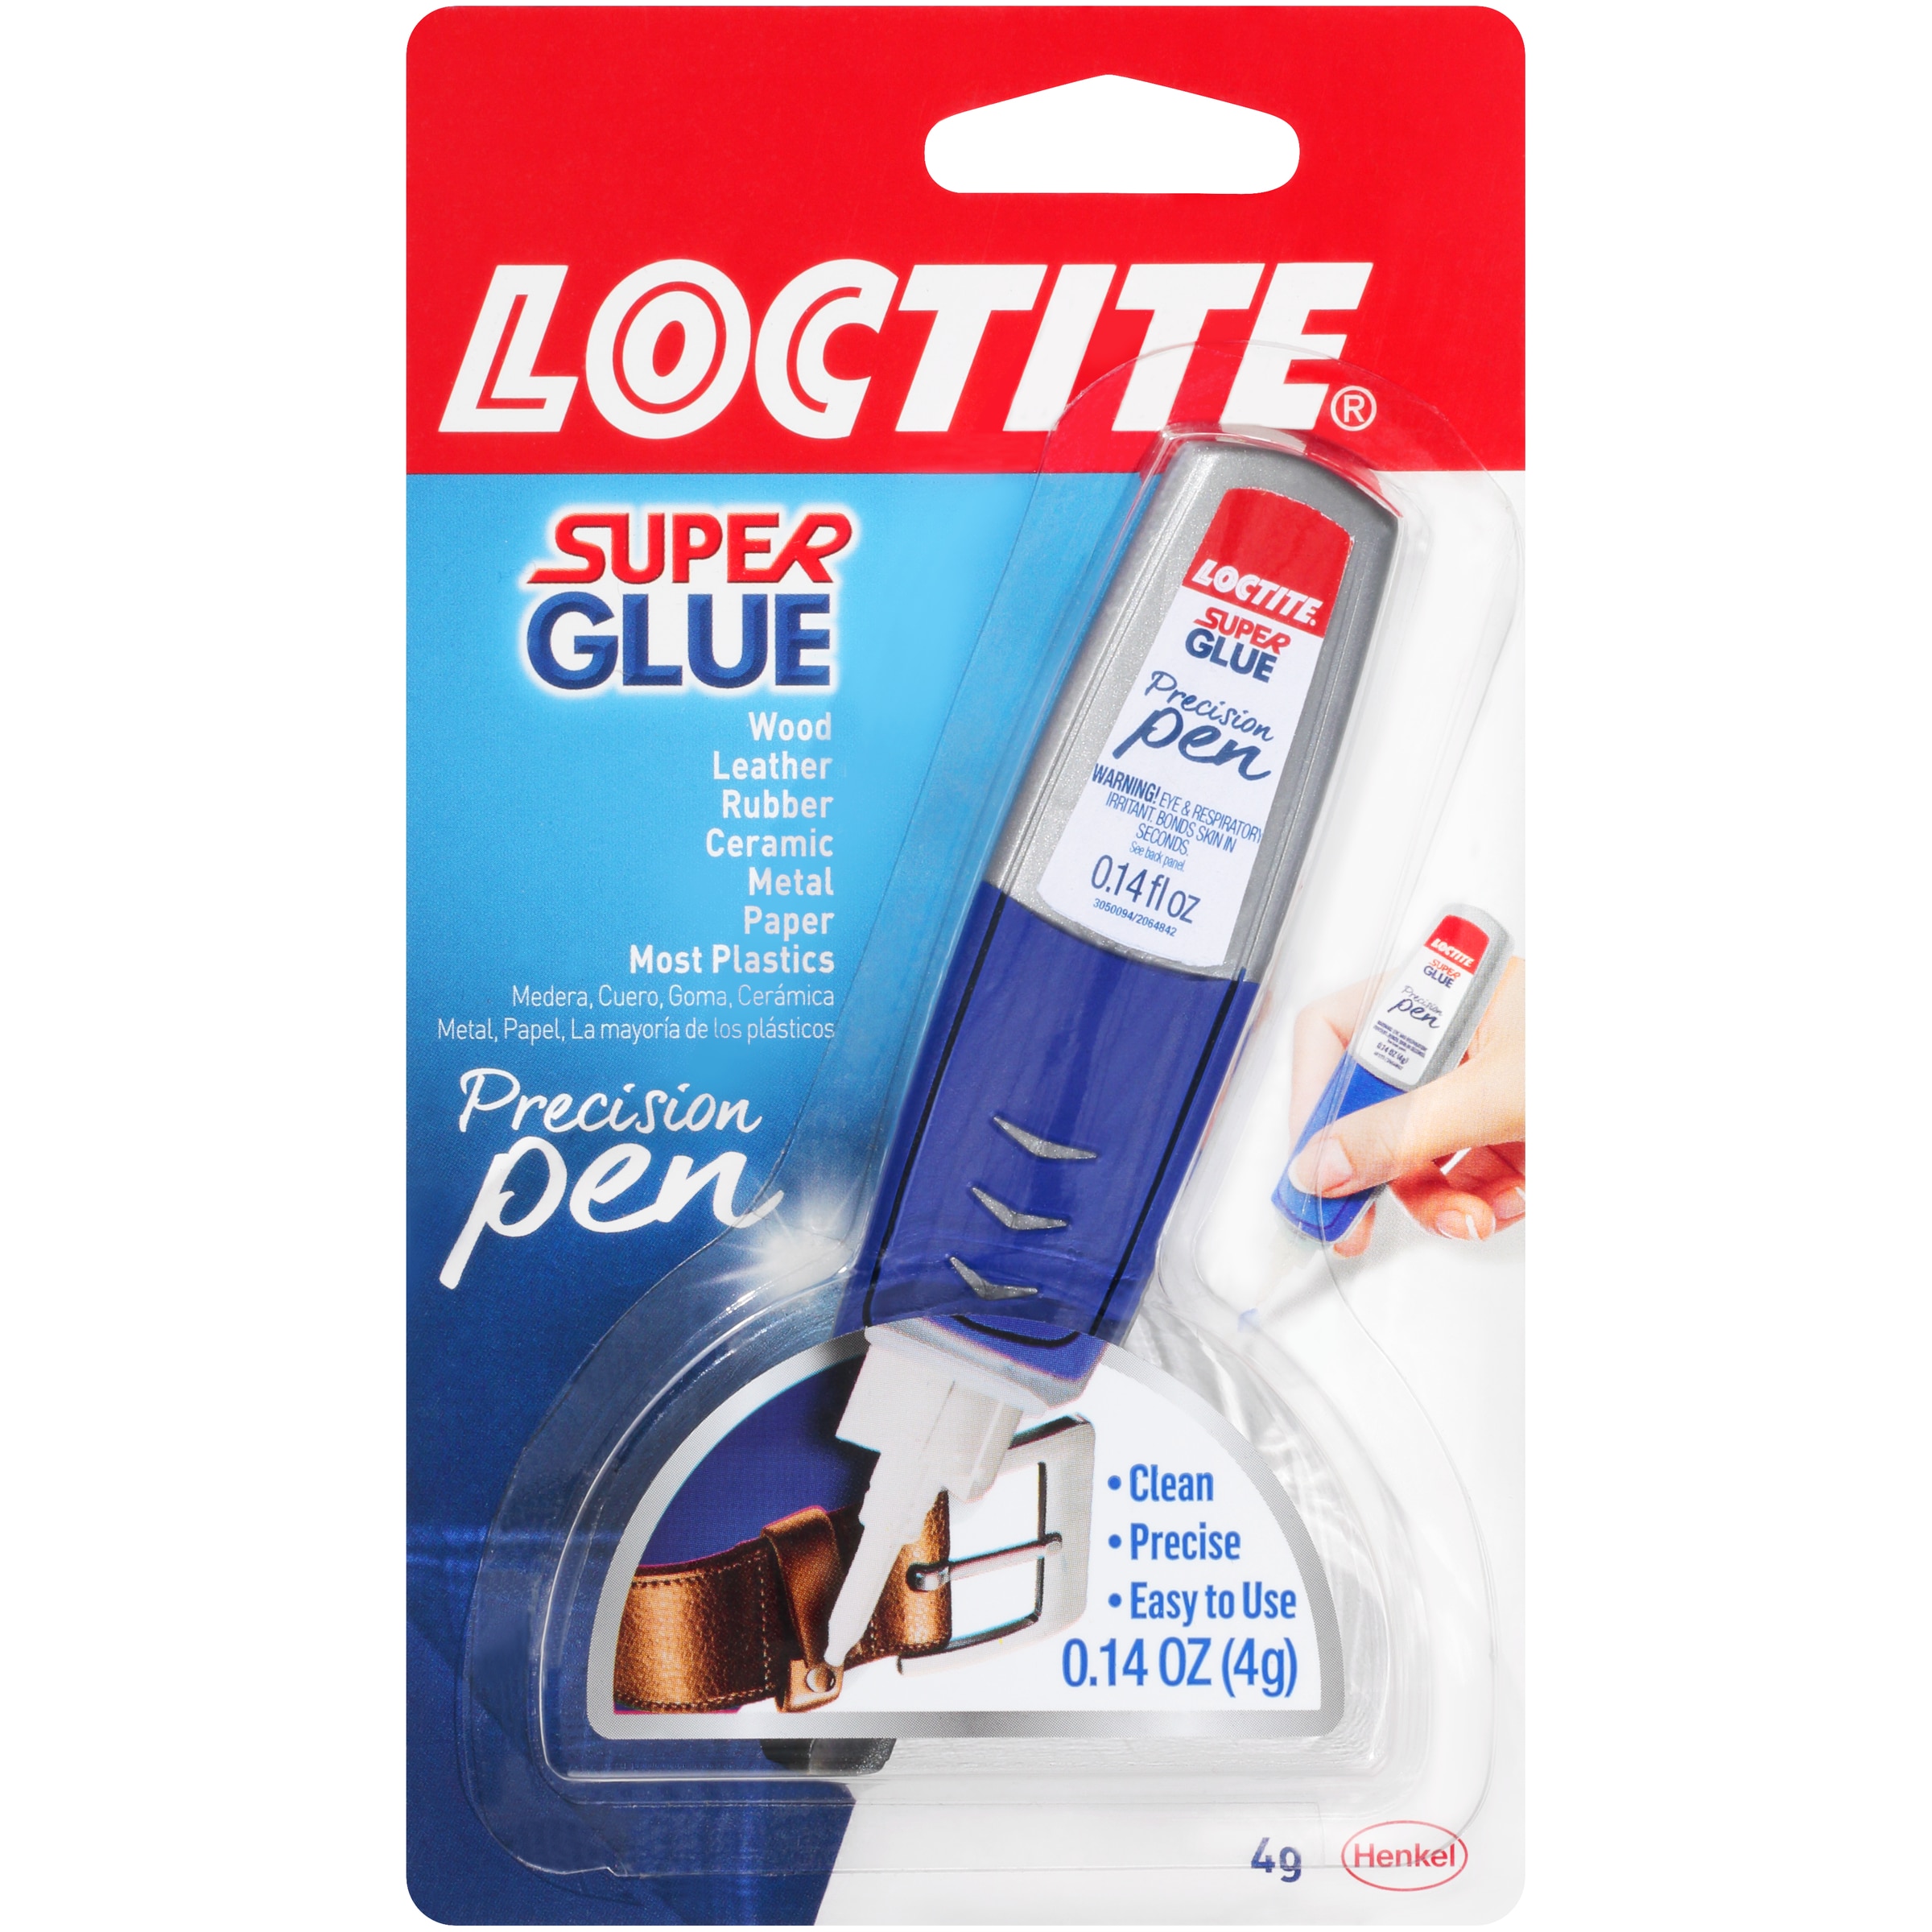 LOCTITE Precision pen gel 4-gram Liquid Super Glue in the Super